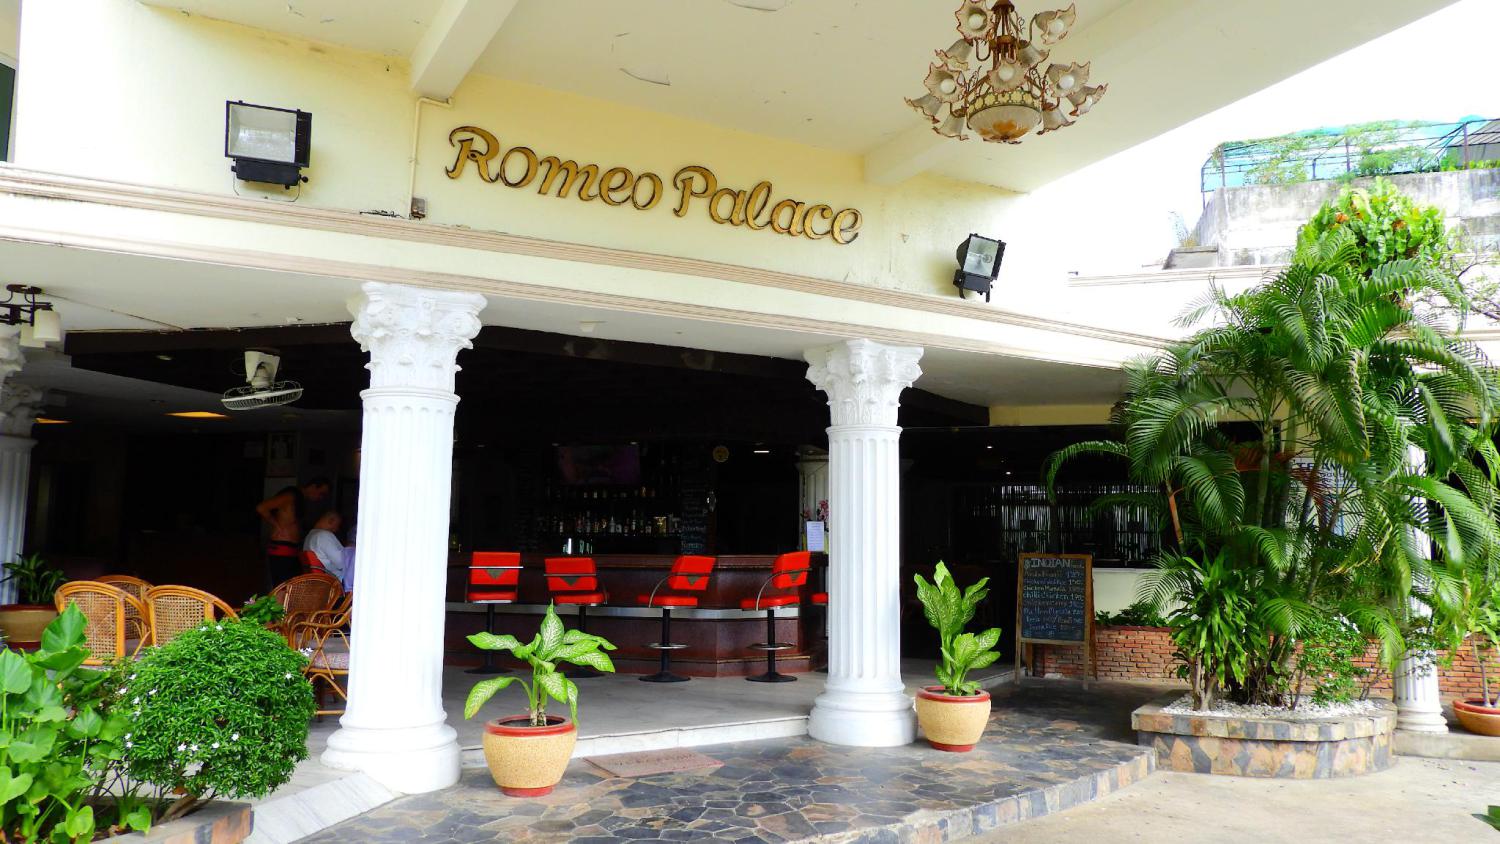 Romeo Palace Hotel - Image 2